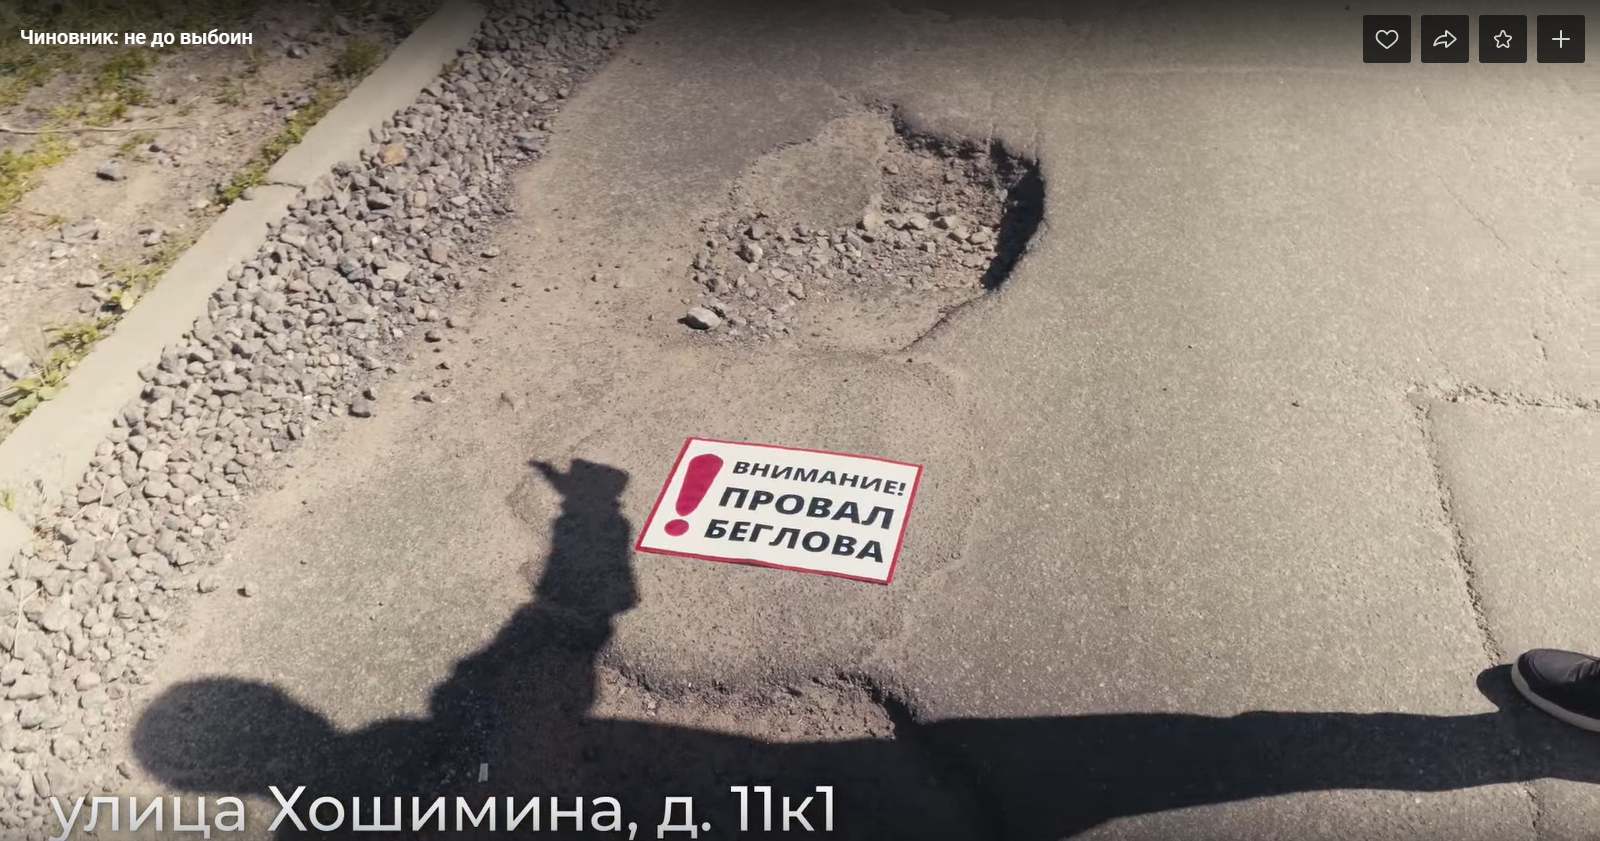 Активисты пометили специальными табличками огромные ямы во дворах Петербурга 